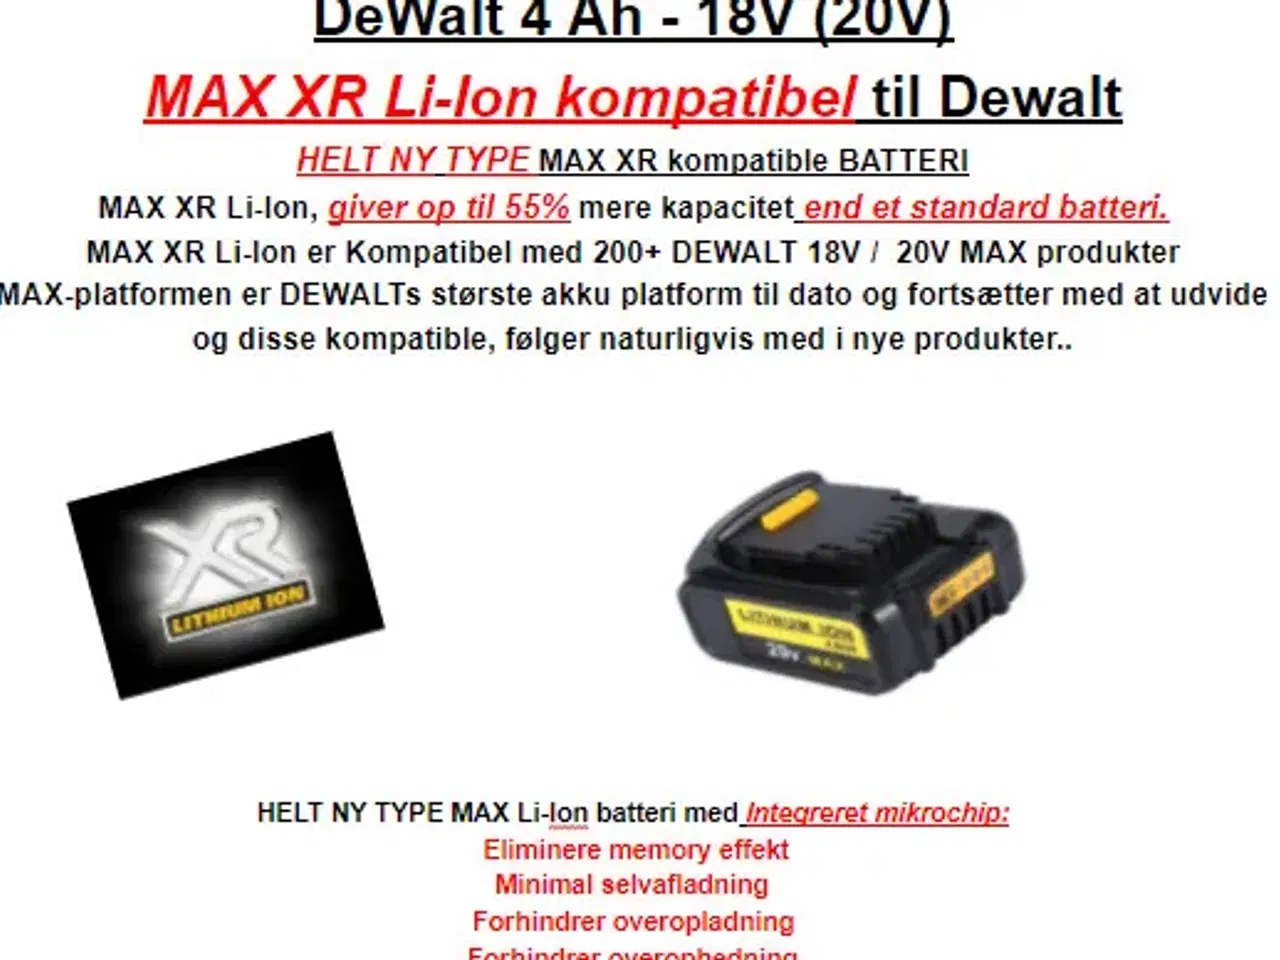 Billede 1 - DeWalt - 4 Ah - 18 v (20V) MAX Premium XR Li-Ion